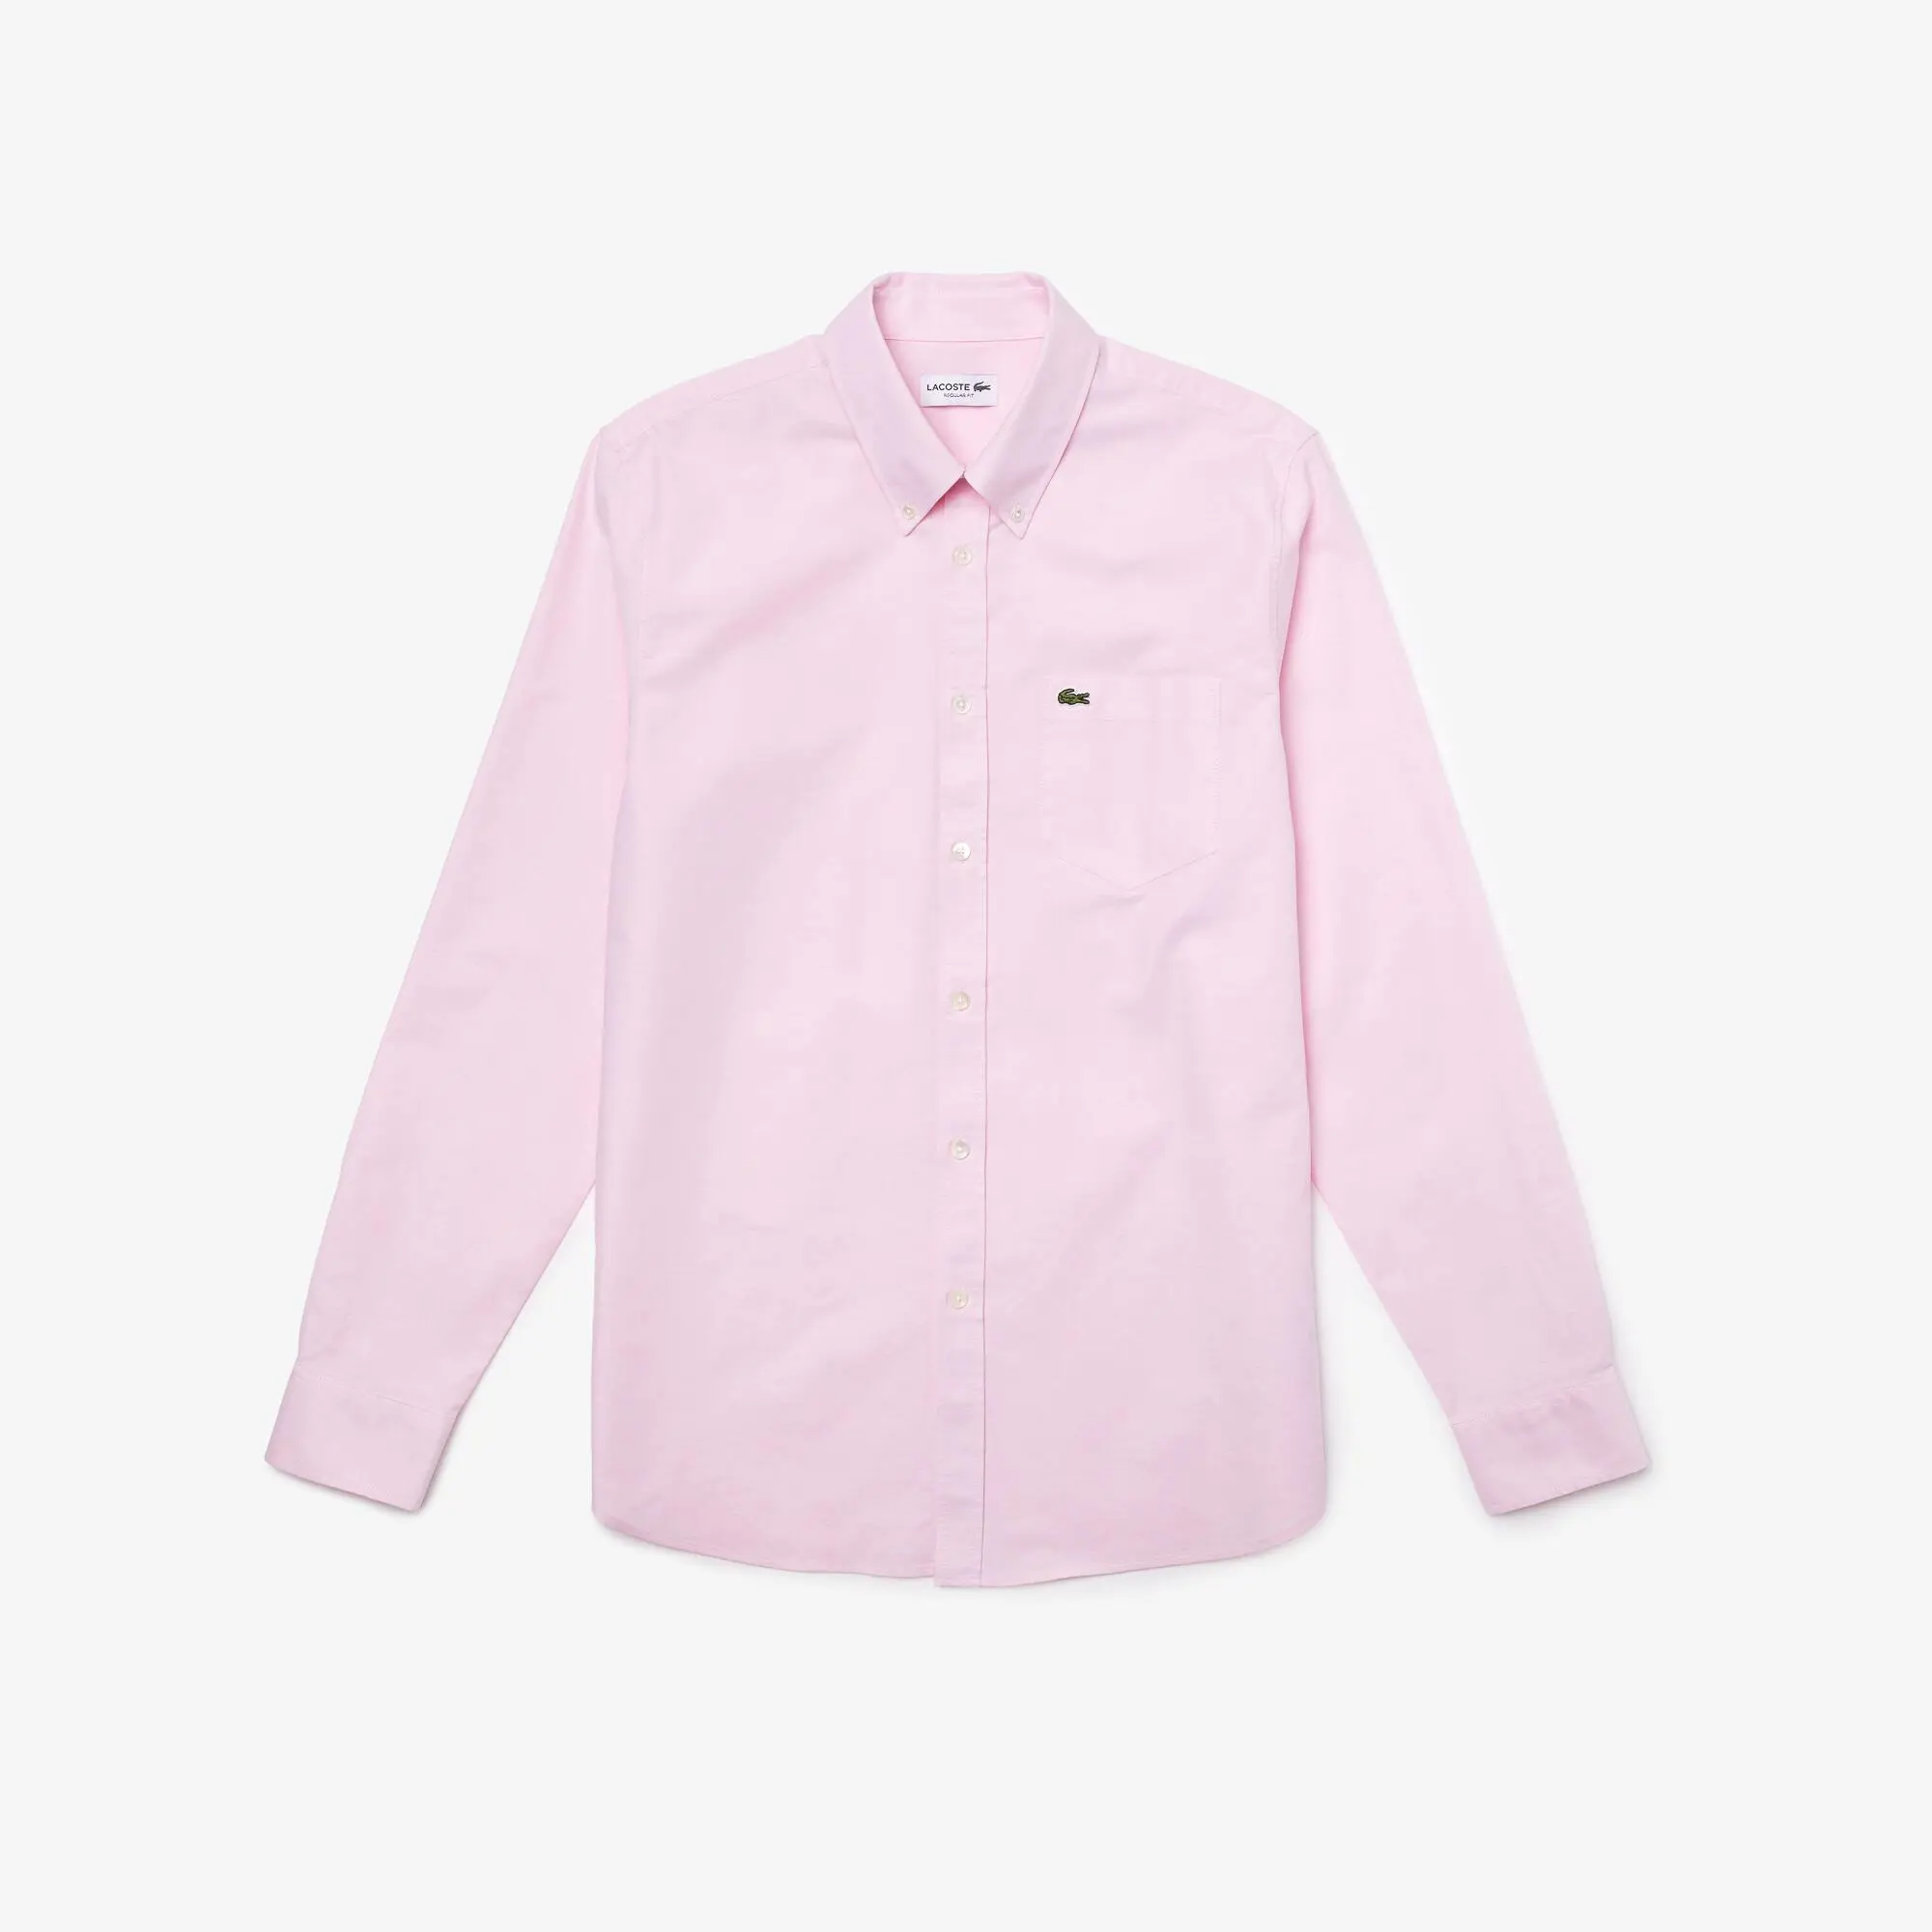 Lacoste Camisa de hombre regular fit en algodón Oxford. 2